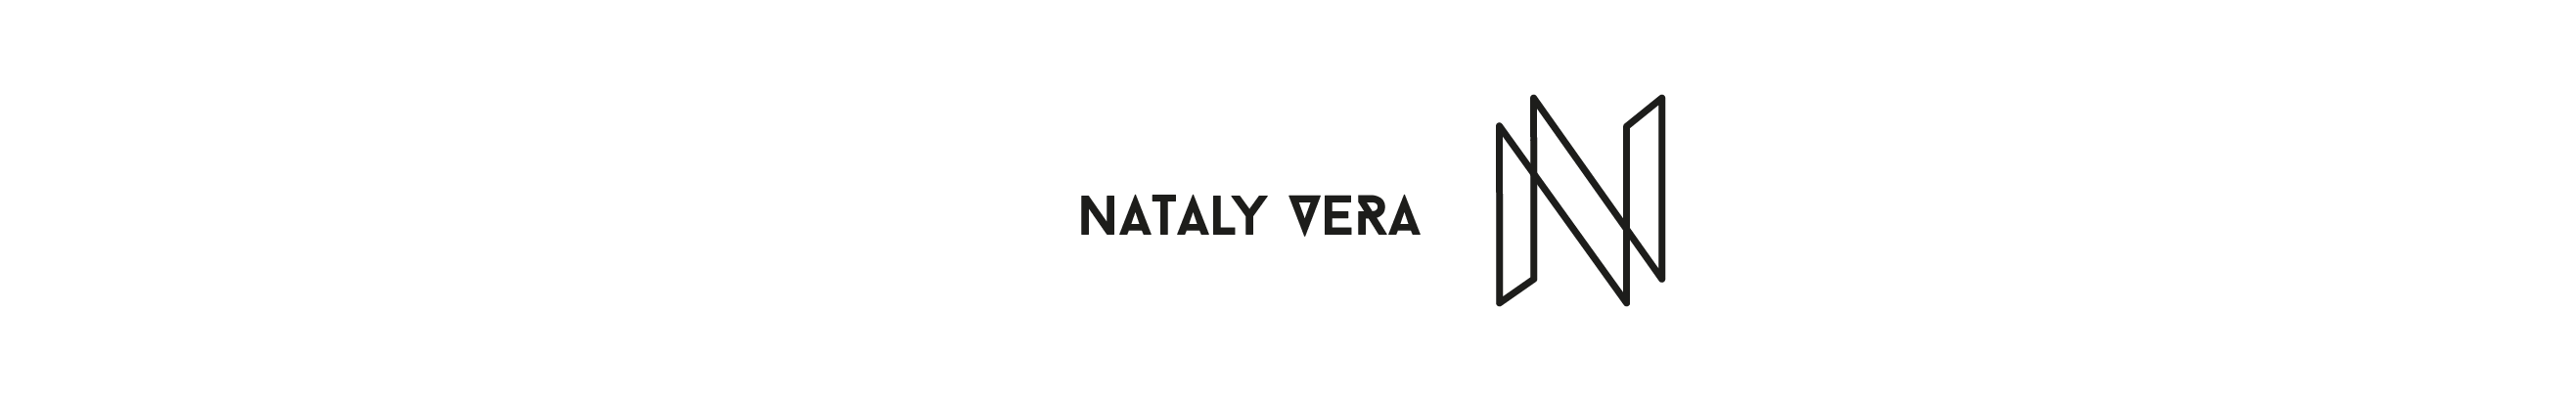 Nataly Vera Tapia's profile banner